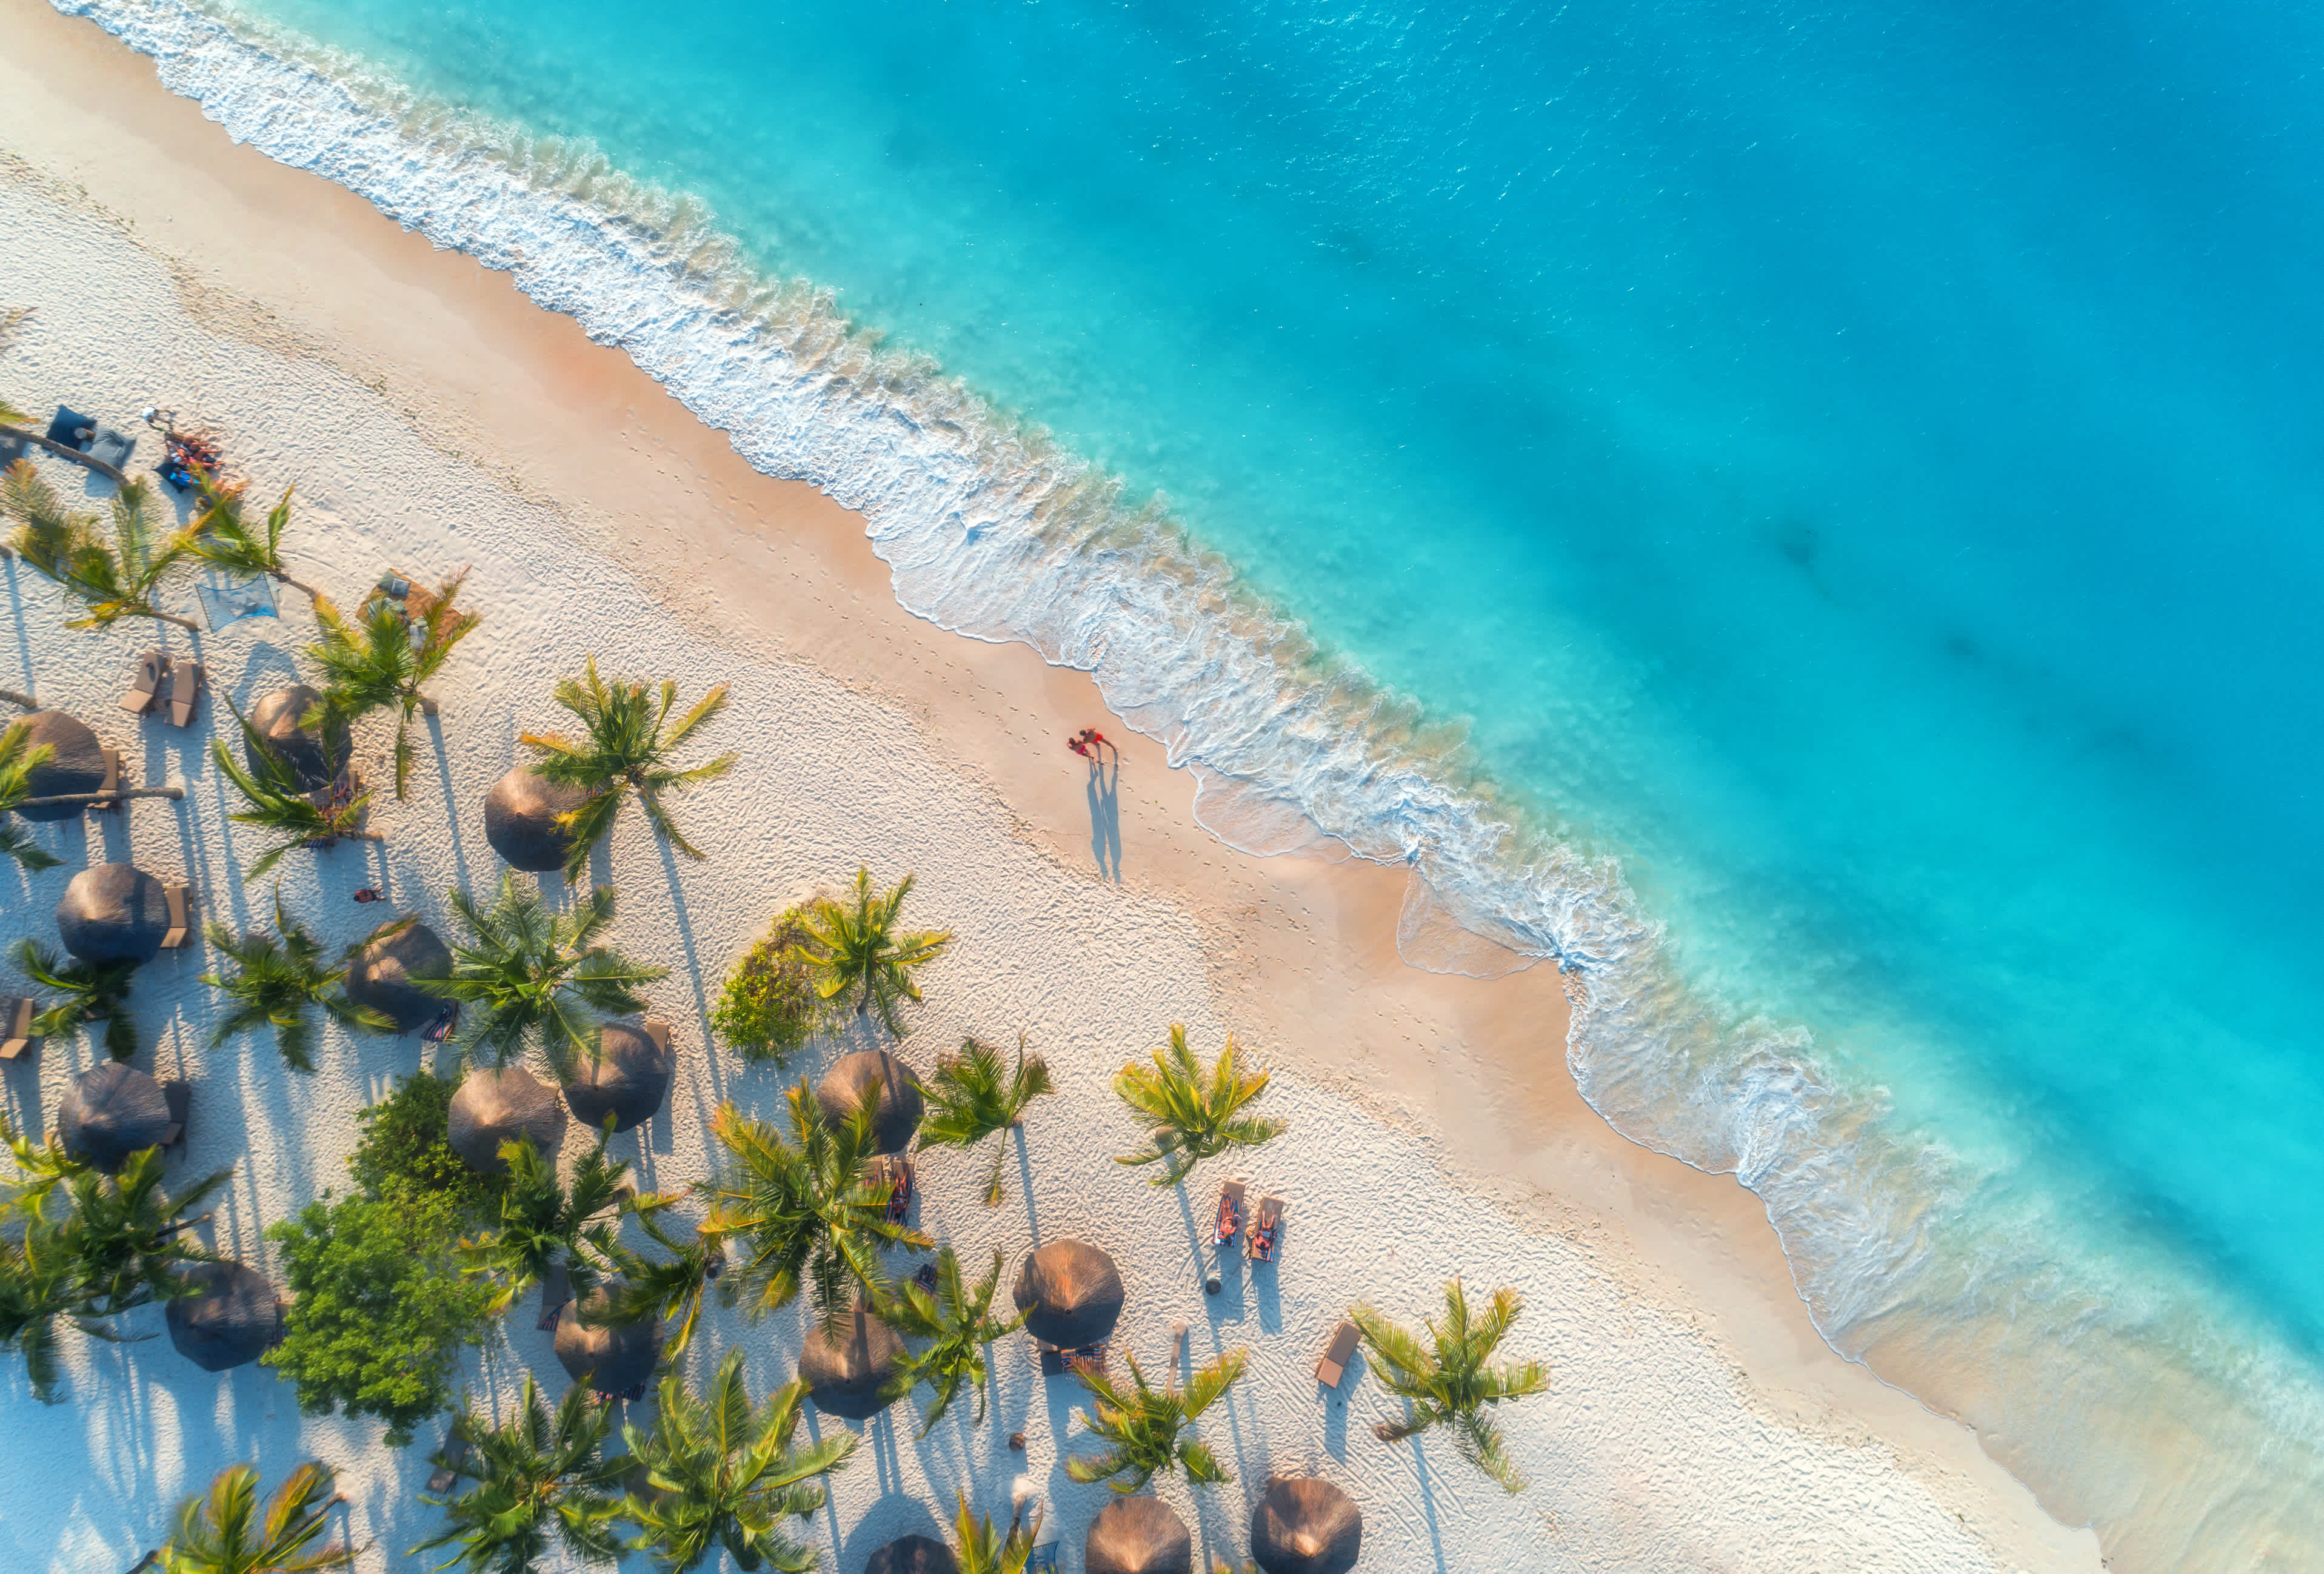 Luftaufnahme von Sonnenschirmen, Palmen am Sandstrand, Menschen, blaues Meer mit Wellen bei Sonnenuntergang